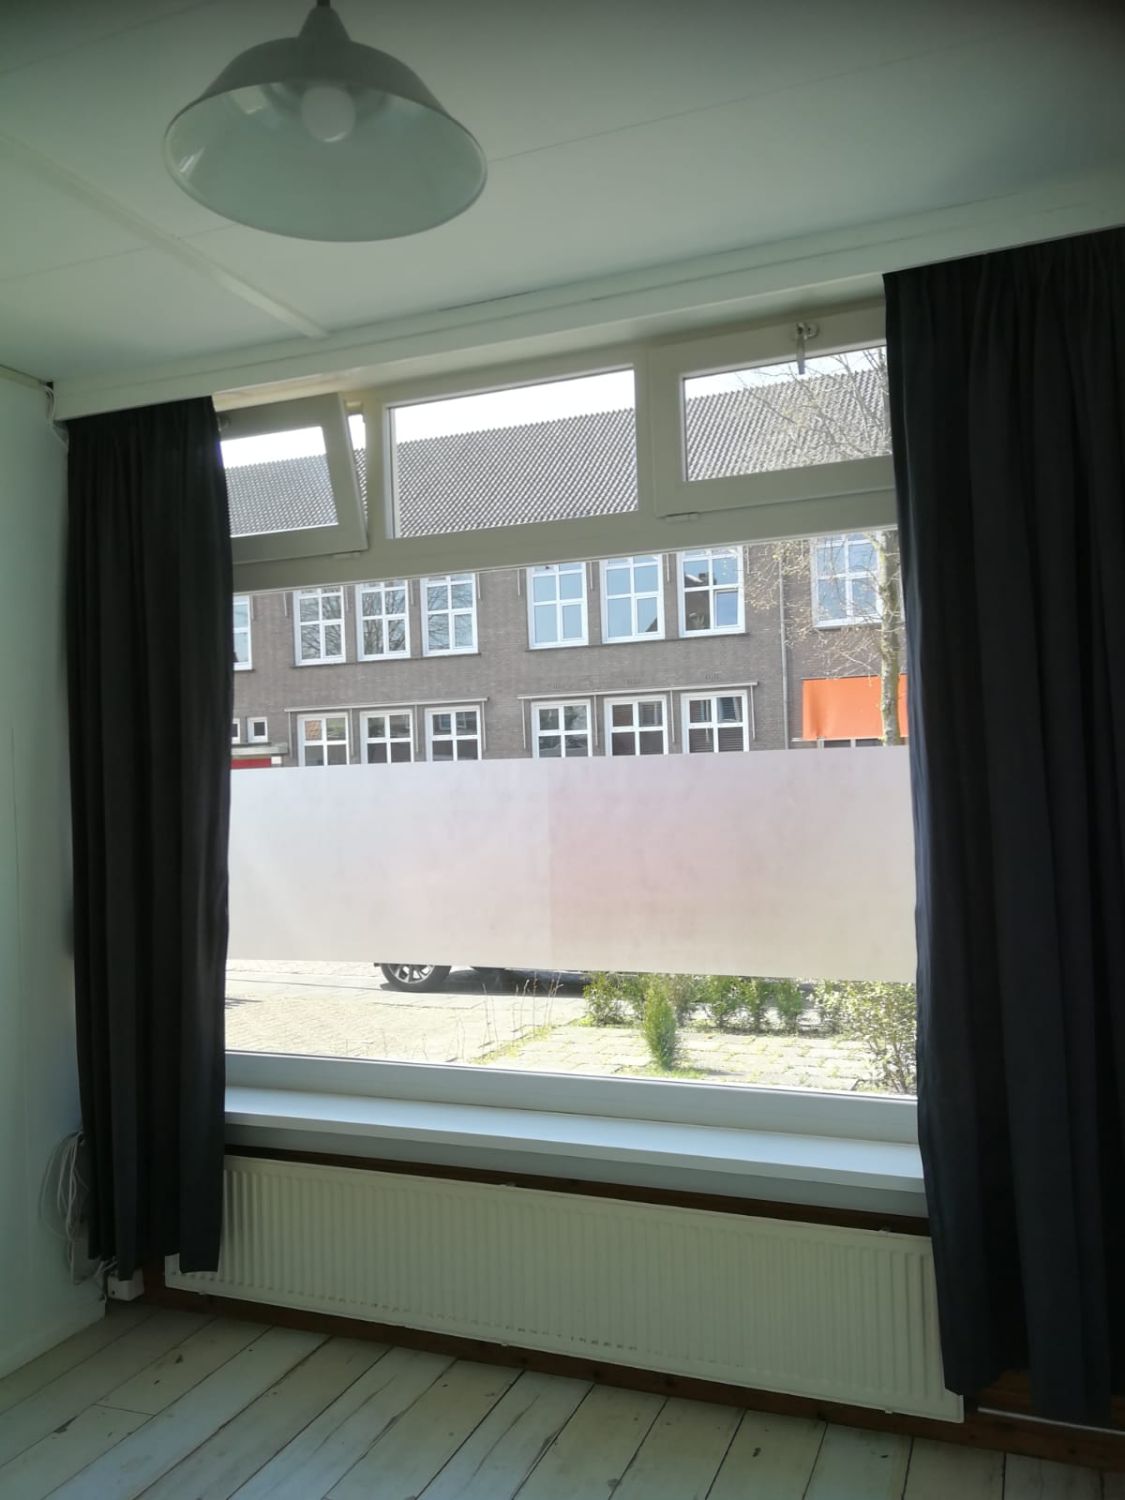 Kamer te huur in de Oranjeboomstraat in Breda